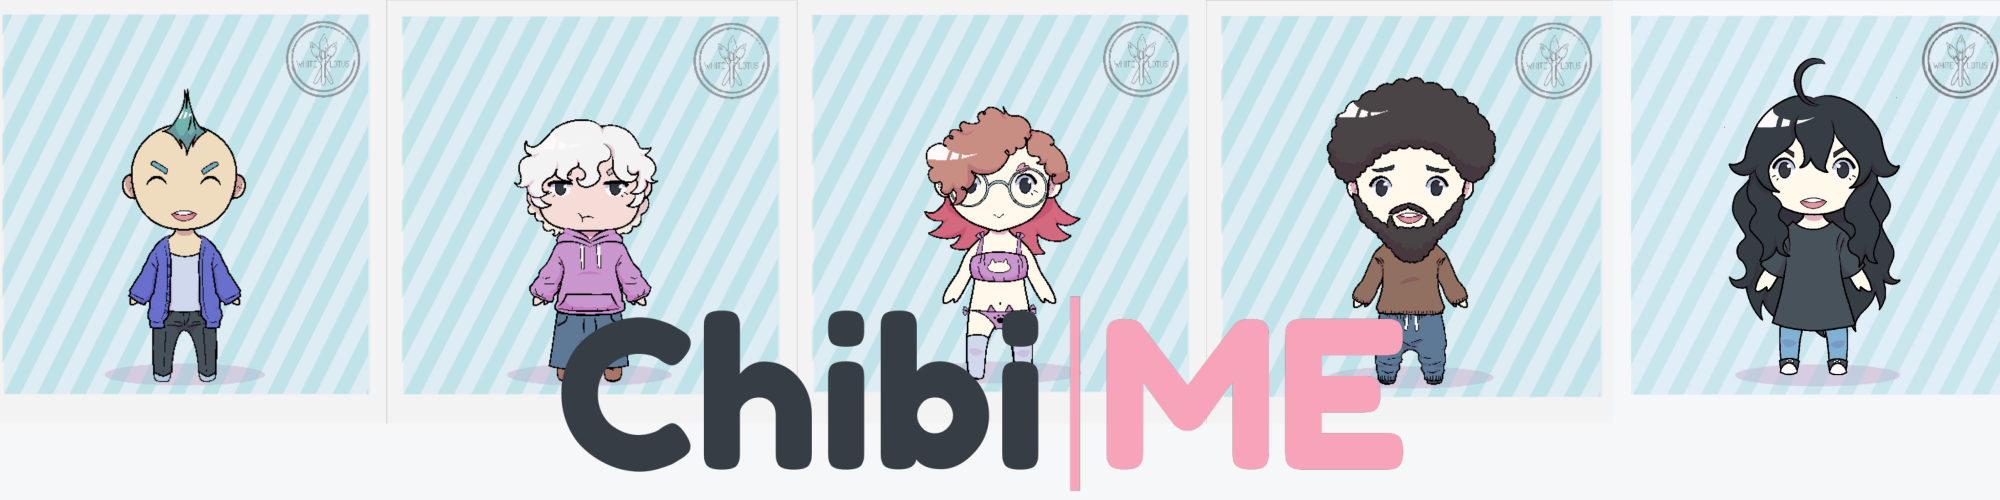 Chibi|Me - Avatar Maker